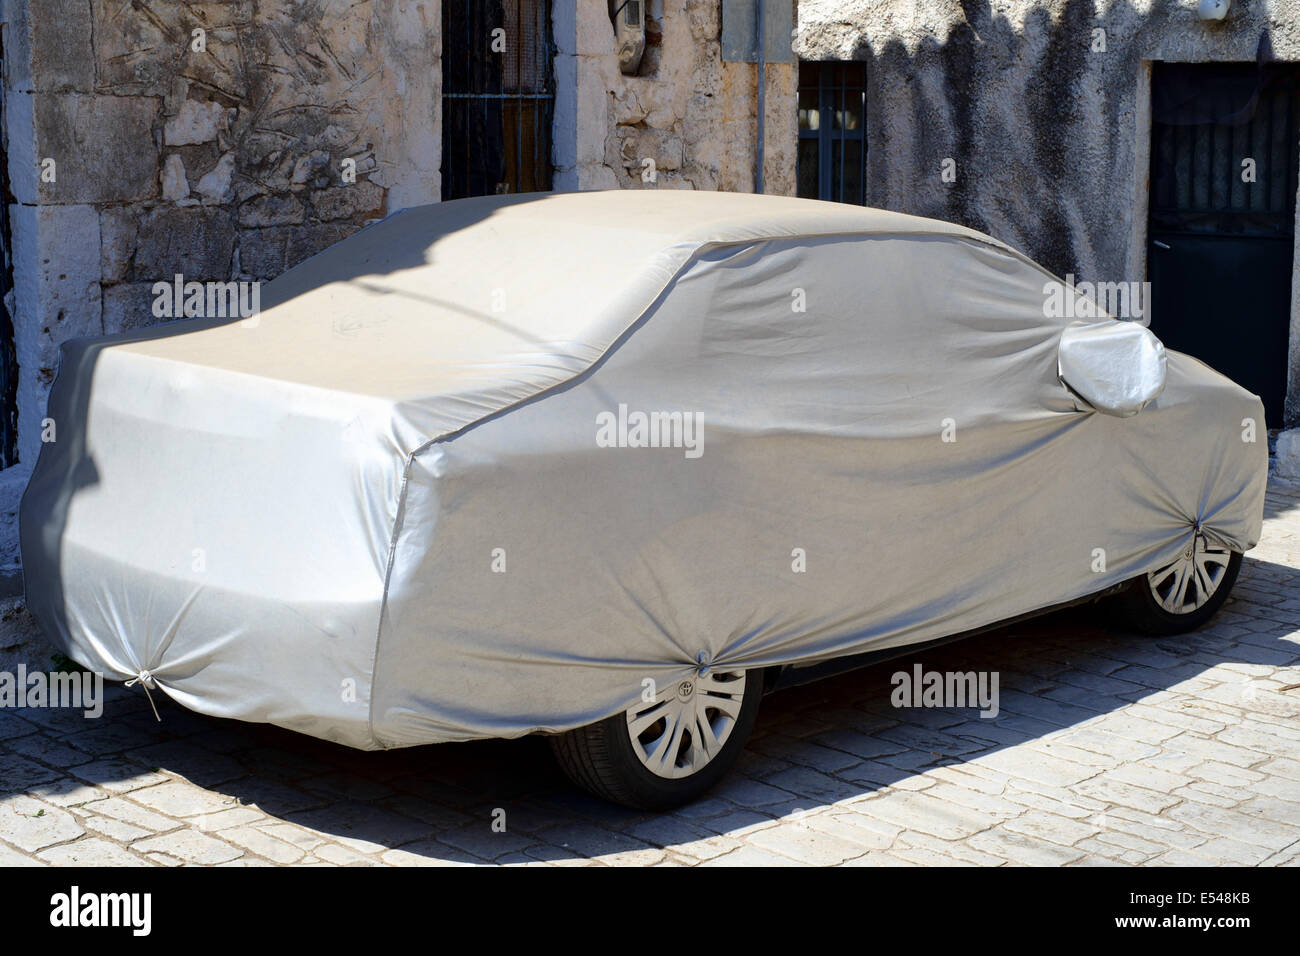 KARDAMYLI, MANI PENINSULAR, Peloponneso, Grecia, 6 luglio 2014. Auto sotto copertura in tessuto per proteggere contro il sole, meteo etc Foto Stock